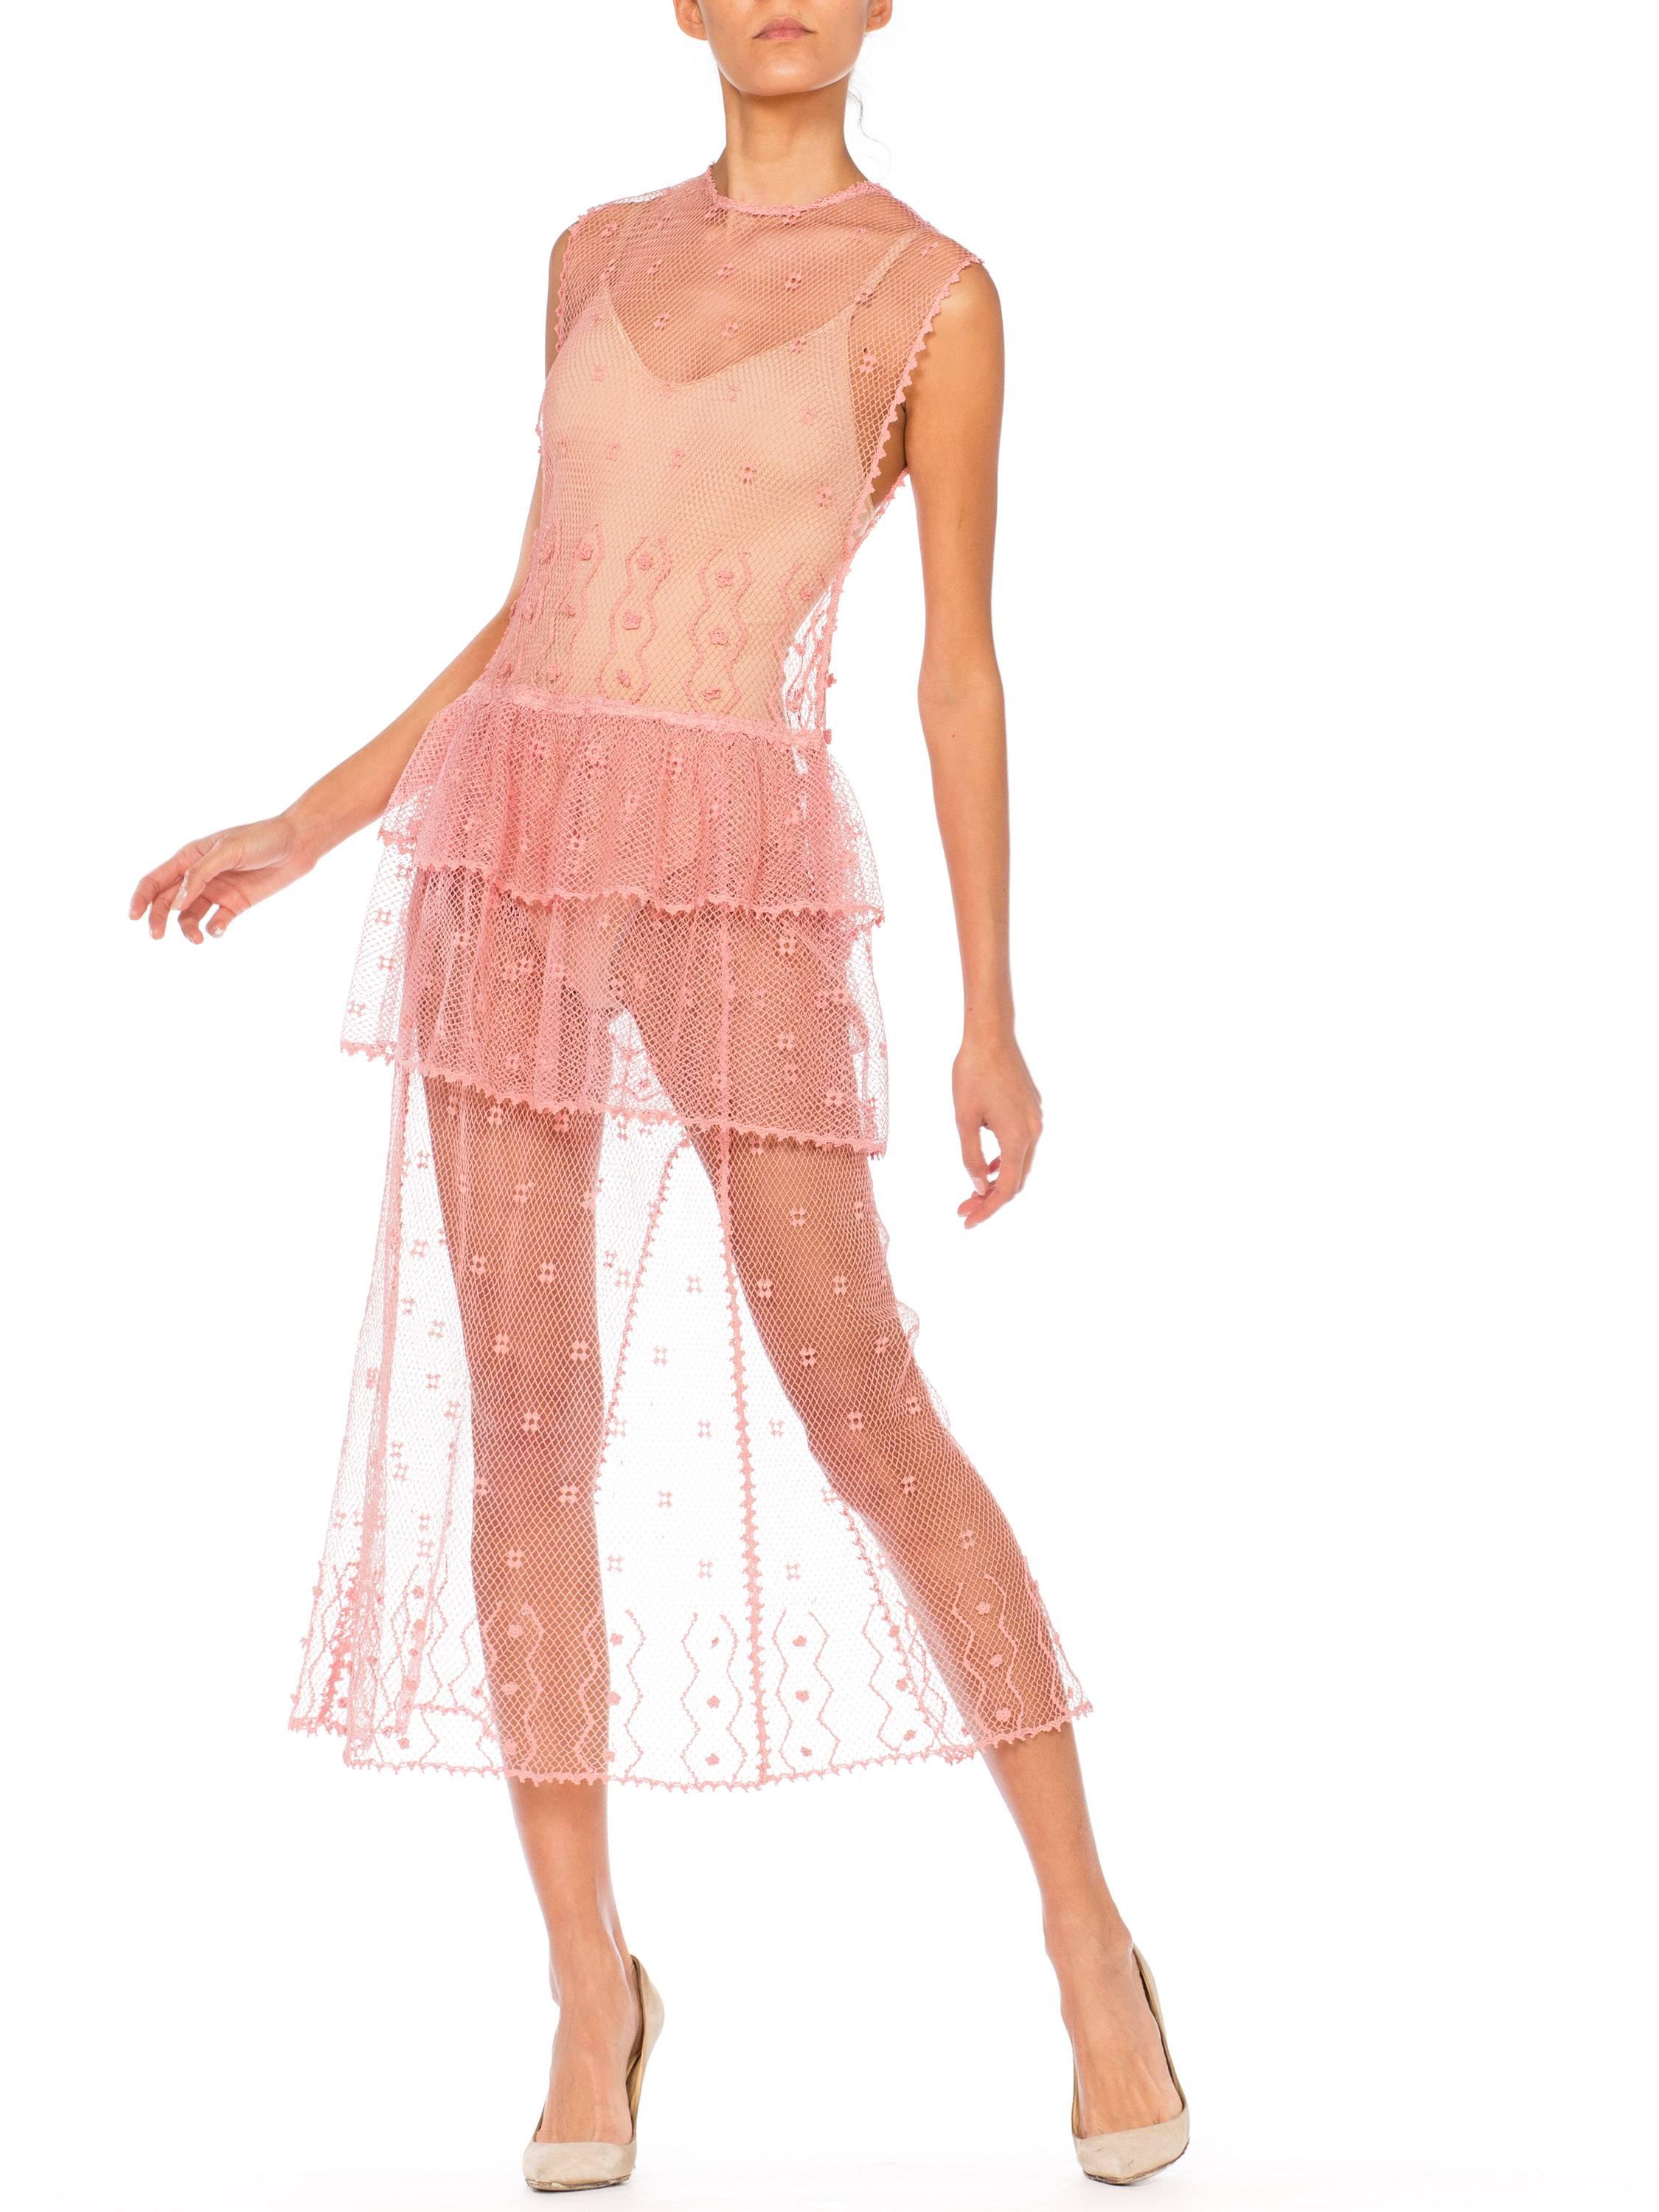 Sheer Pink Hand Crochet Cotton Net Dress, 1980s   6